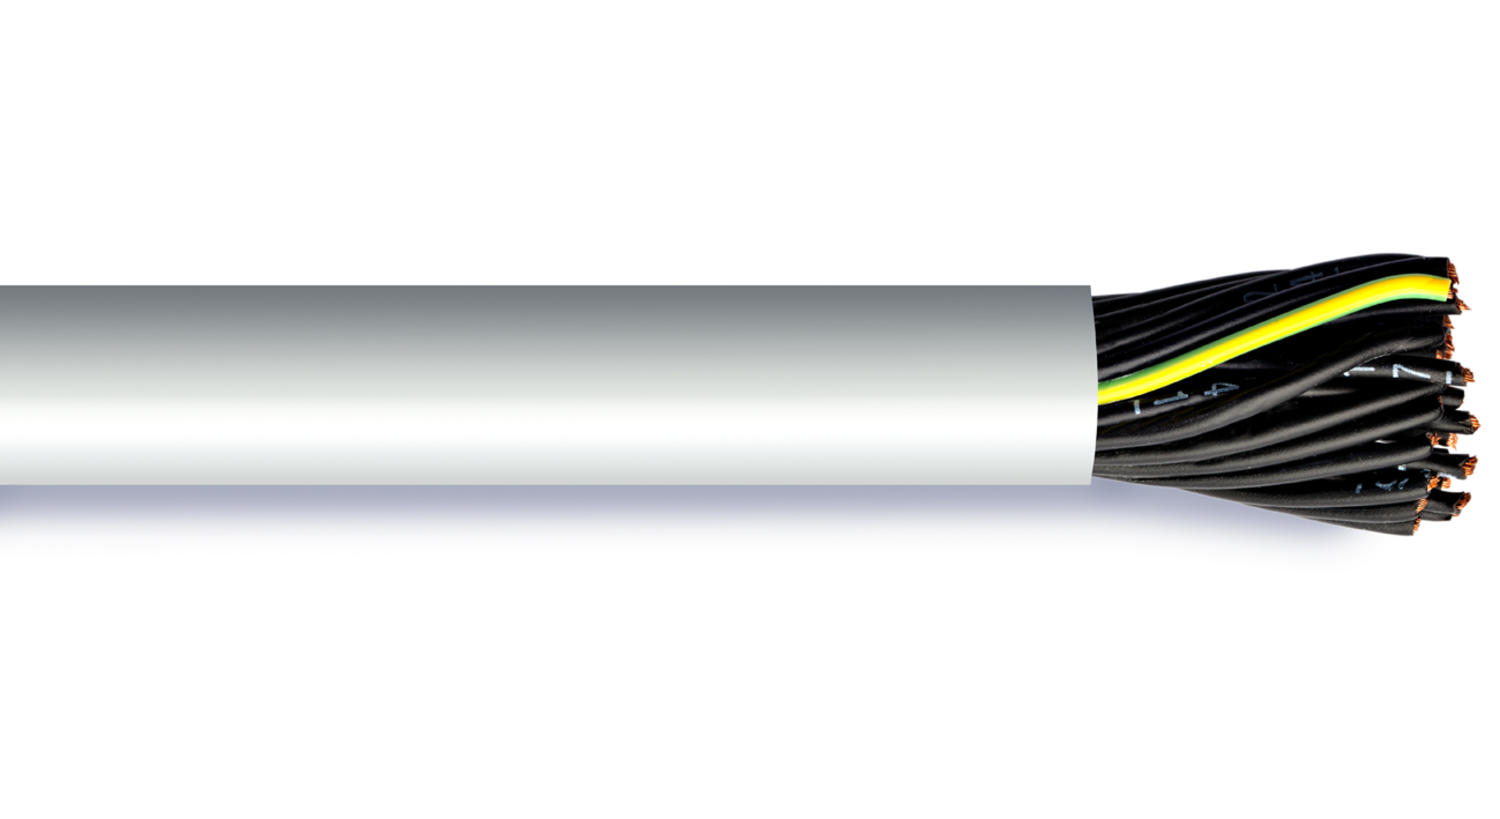 PVC cable de impuestos-ysly sección transversal jz 5x0,75 QMM 100m línea de impuestos 0,52 €/1m